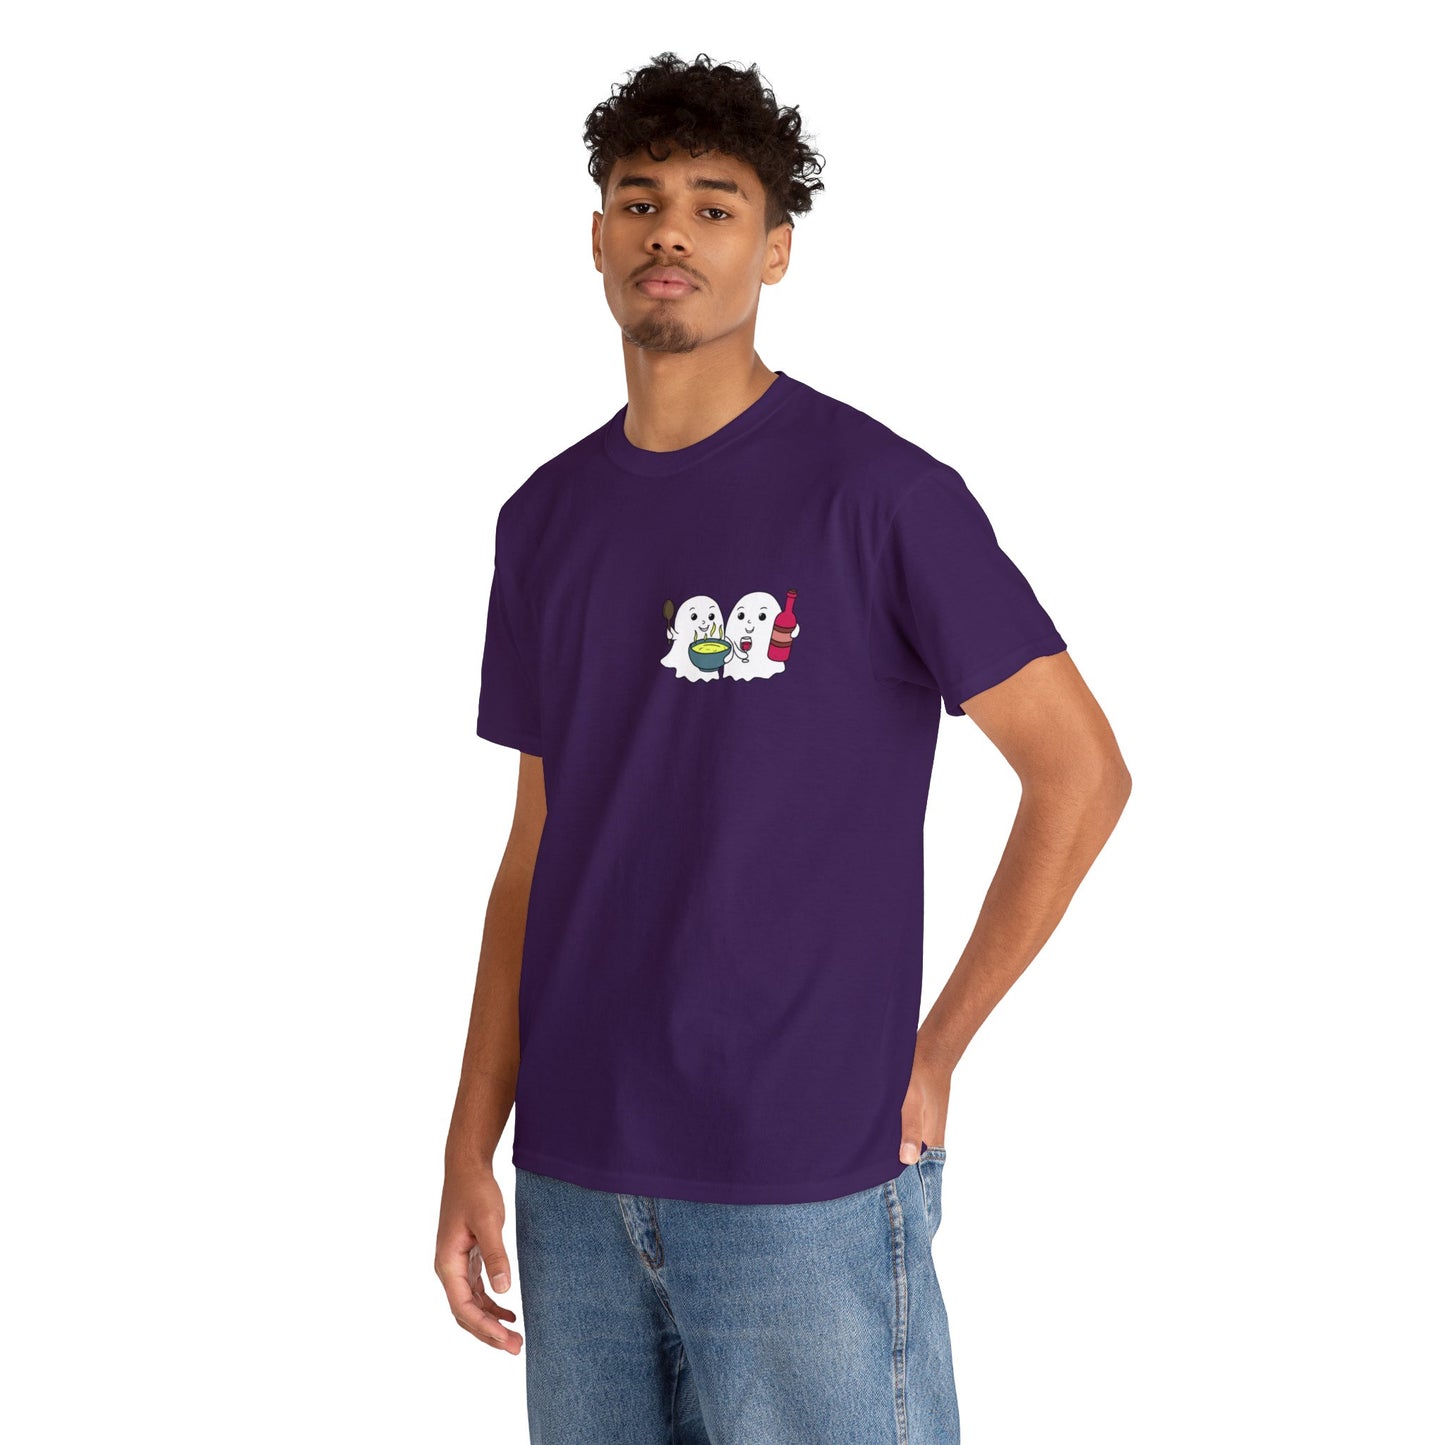 Schwefelgeister T-Shirt (kleines Logo) in allen Farben